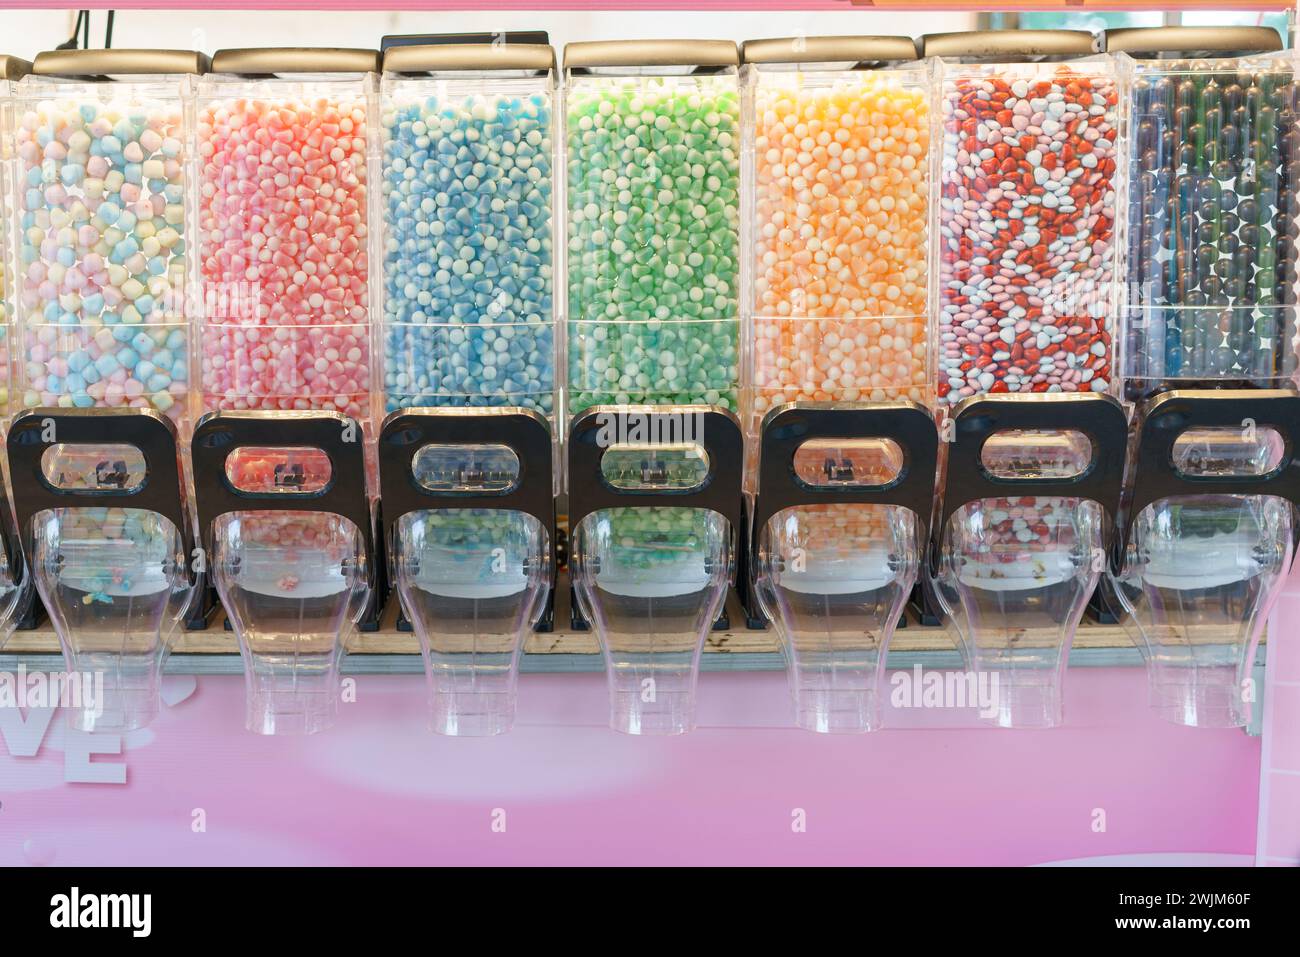 Un affichage vibrant de distributeurs de bonbons remplis d'une variété de bonbons colorés, offrant un choix délicieux pour ceux qui ont la dent sucrée Banque D'Images